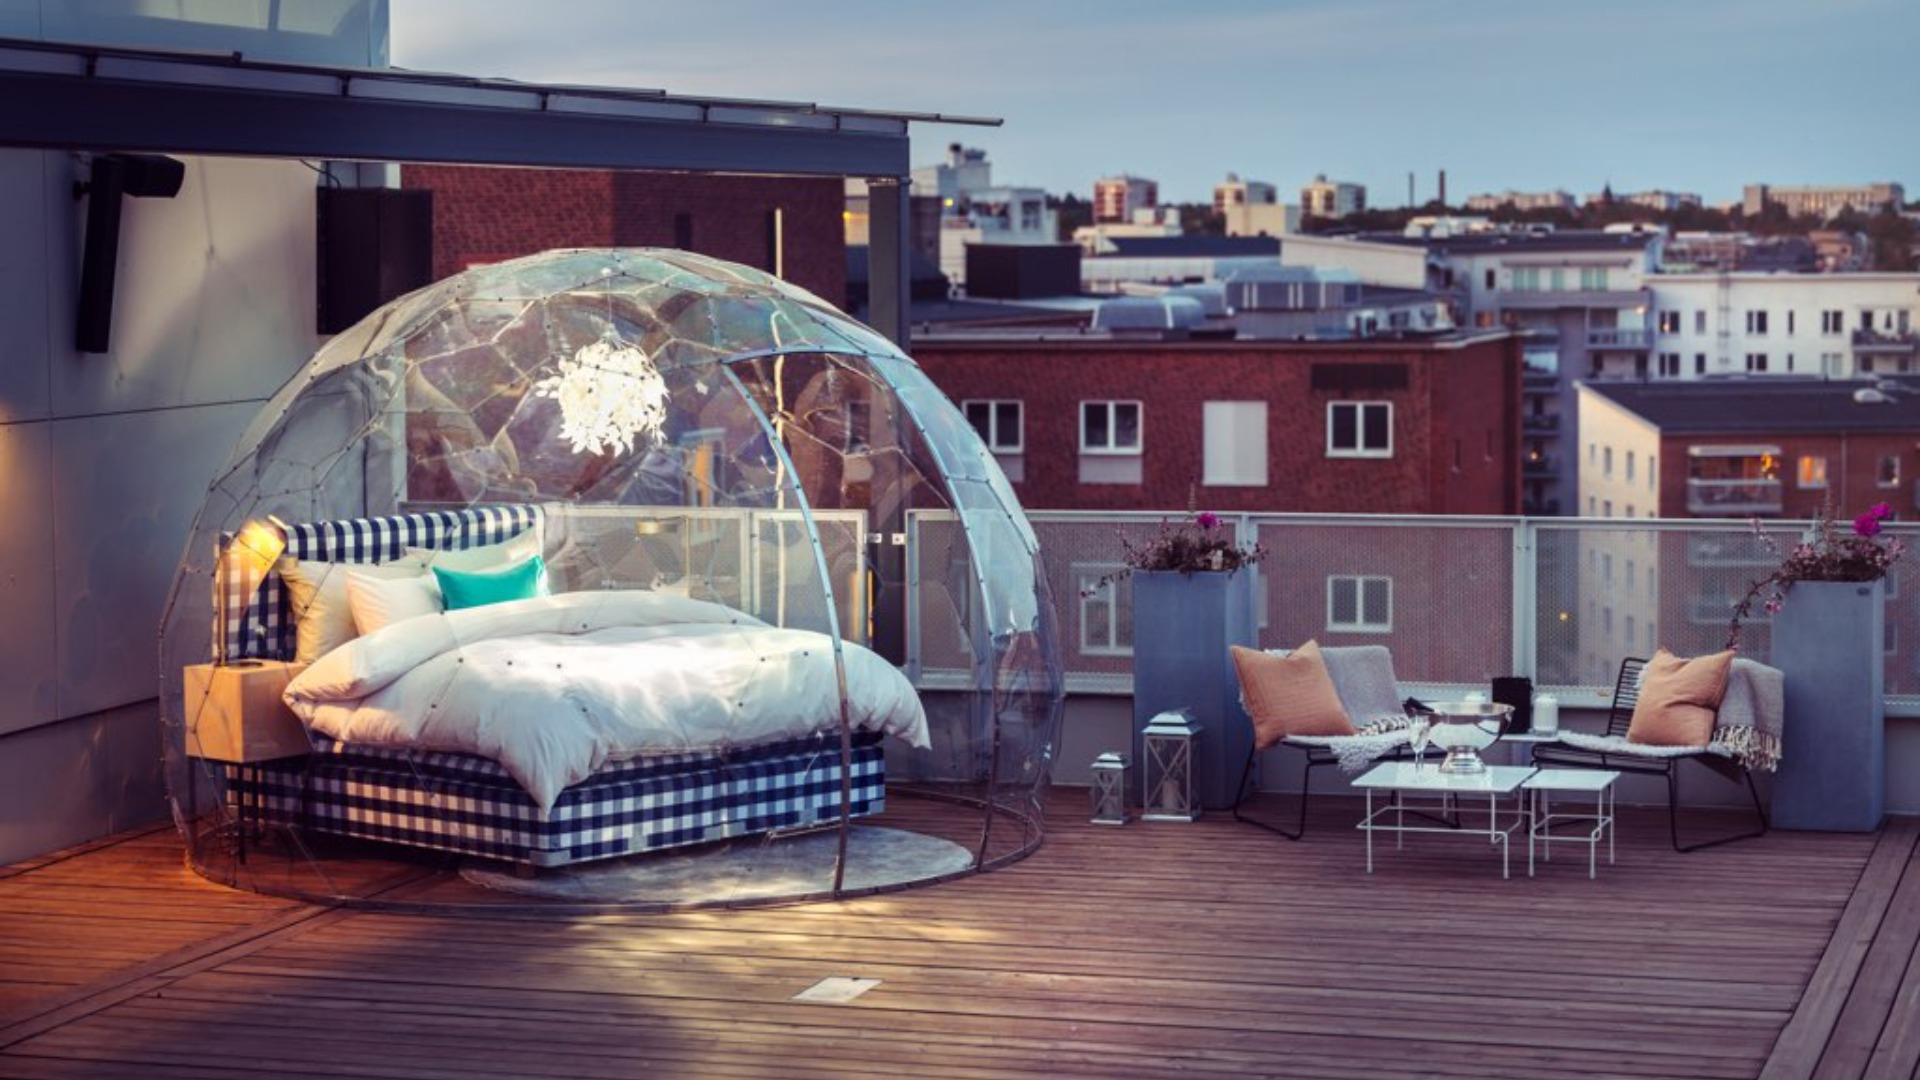 En rutig säng som står på en takterrass i en glaskupa. Fotograf: Avig